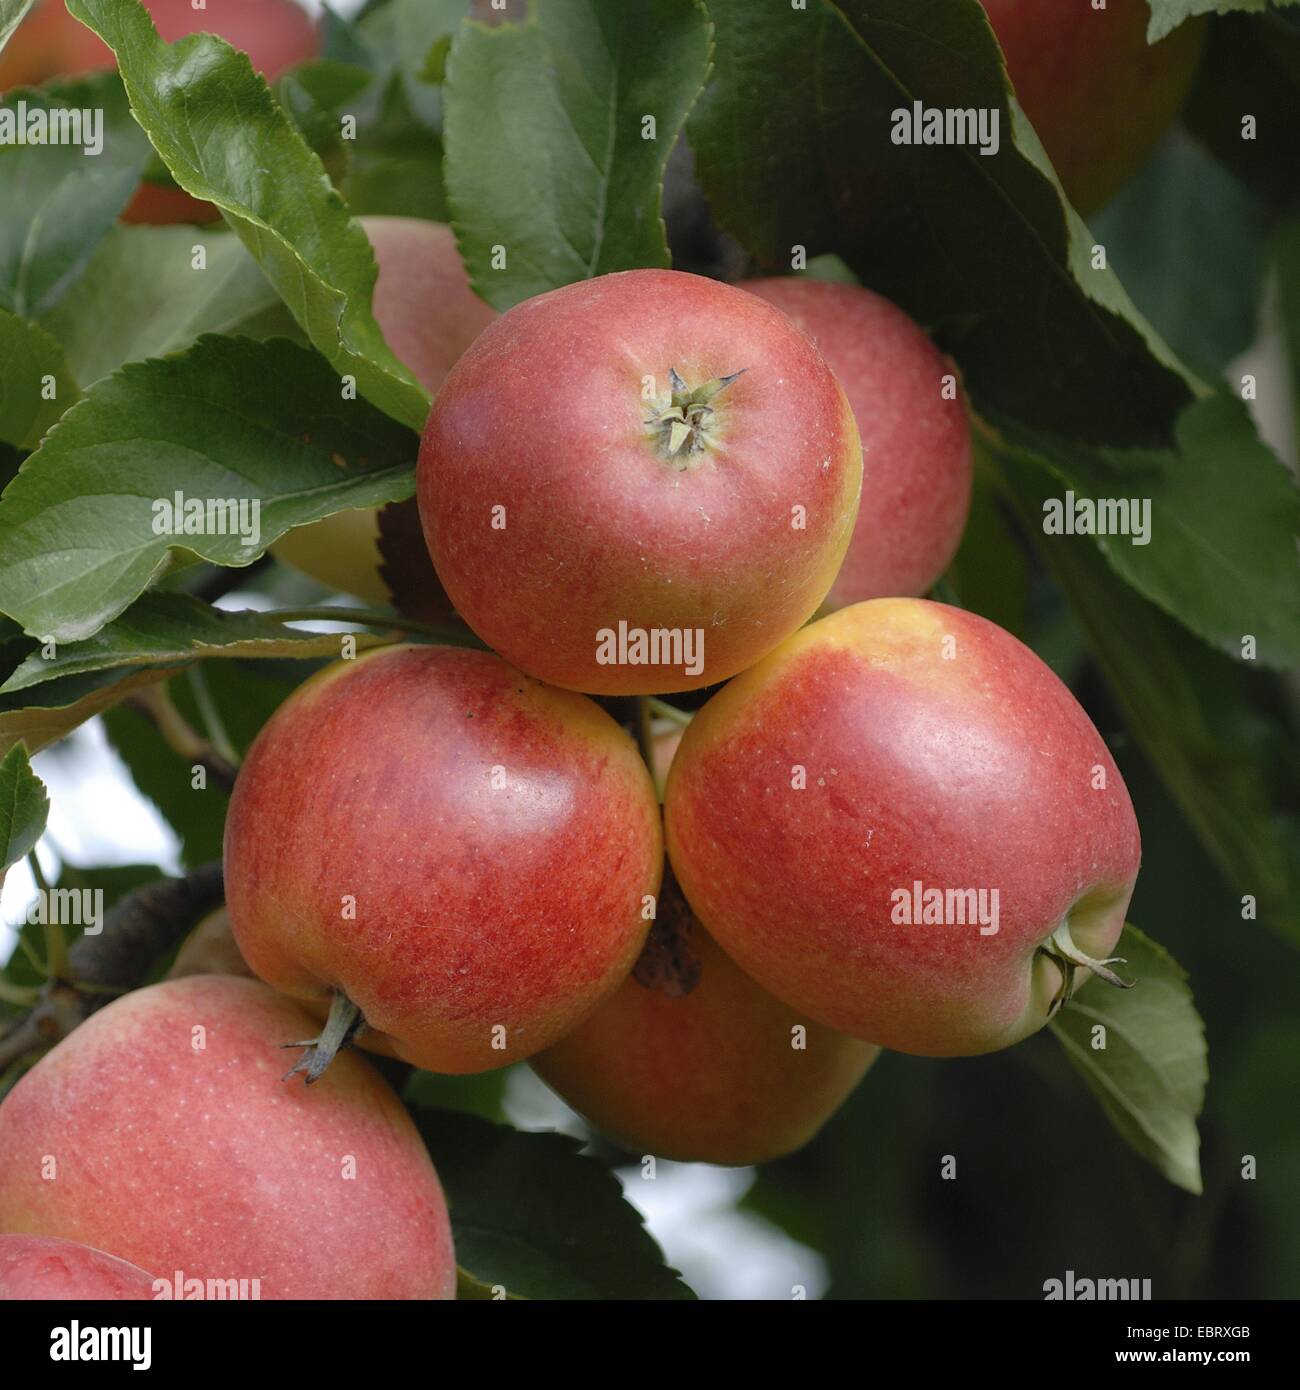 Manzano (Malus domestica 'Gala', Malus domestica), cultivar Gala Gala, manzanas en un árbol Foto de stock